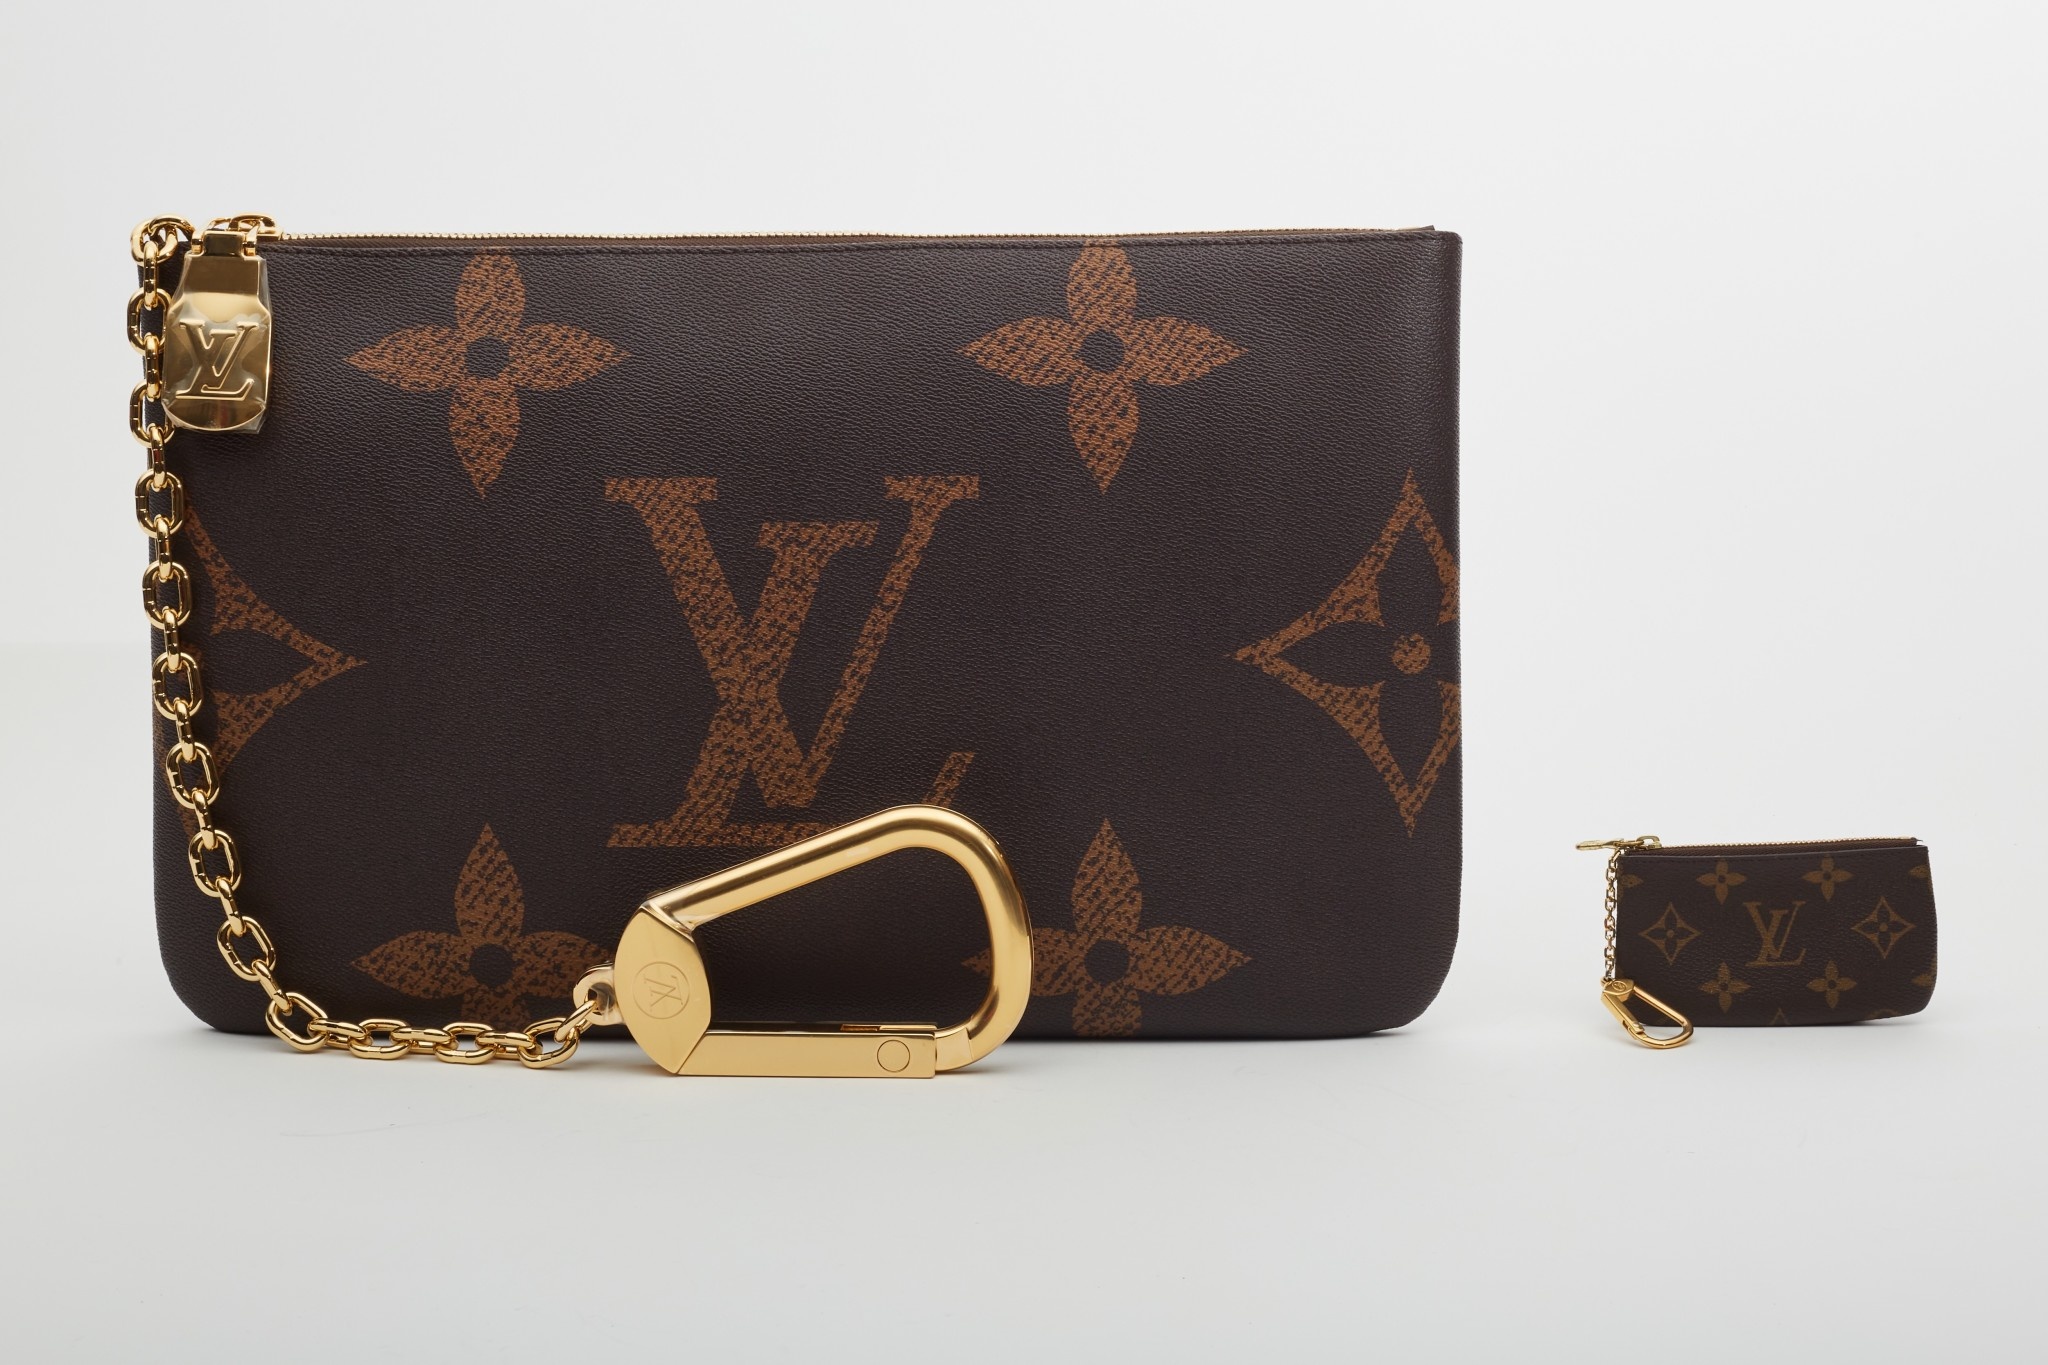 Pochette Cles XL #louisvuitton #lvlover #luxuryretail #lvslg